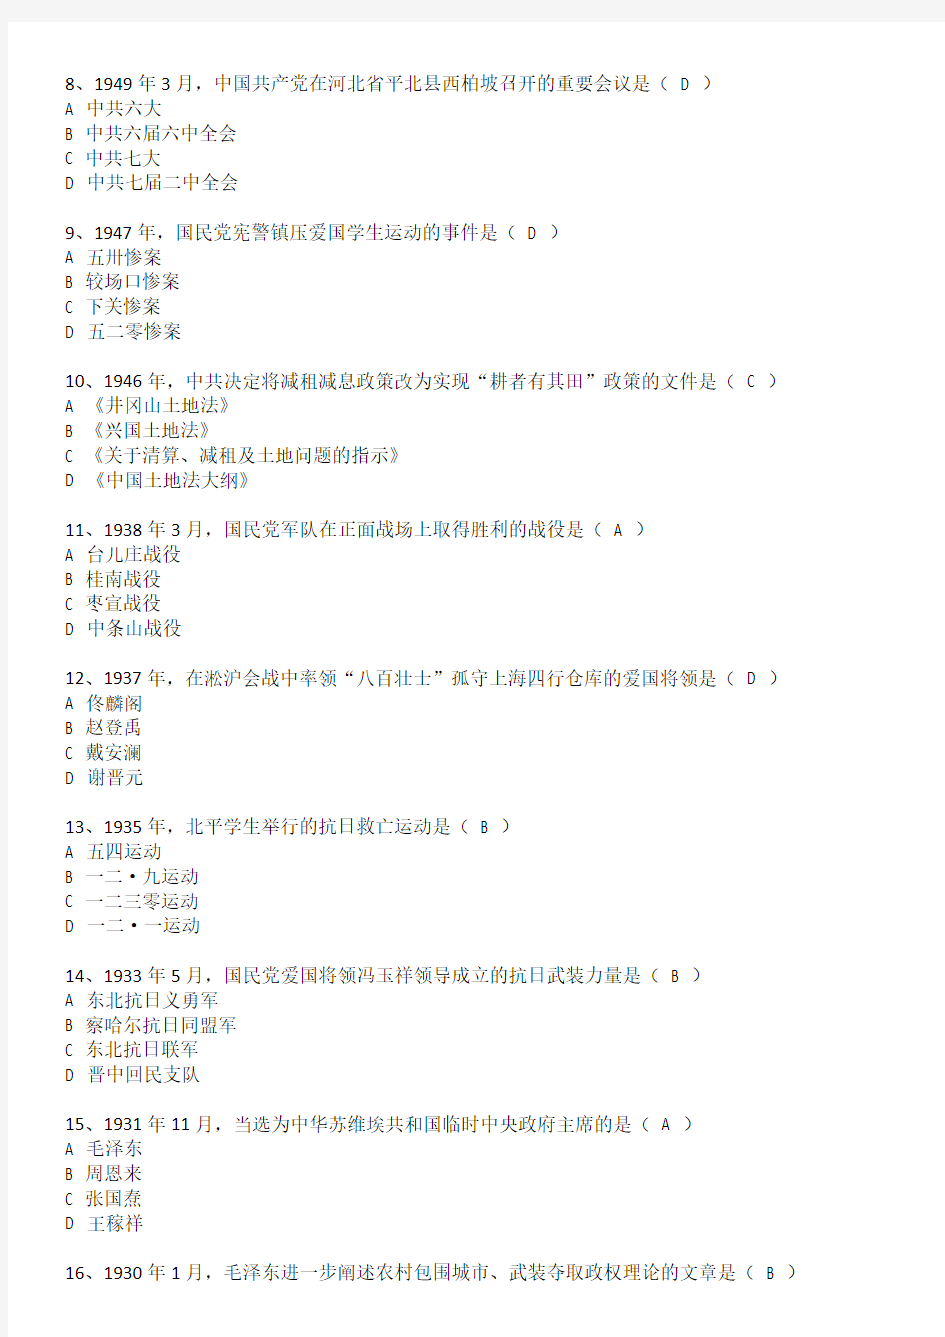 2013年07月自考《中国近现代史纲要》03708试卷和答案